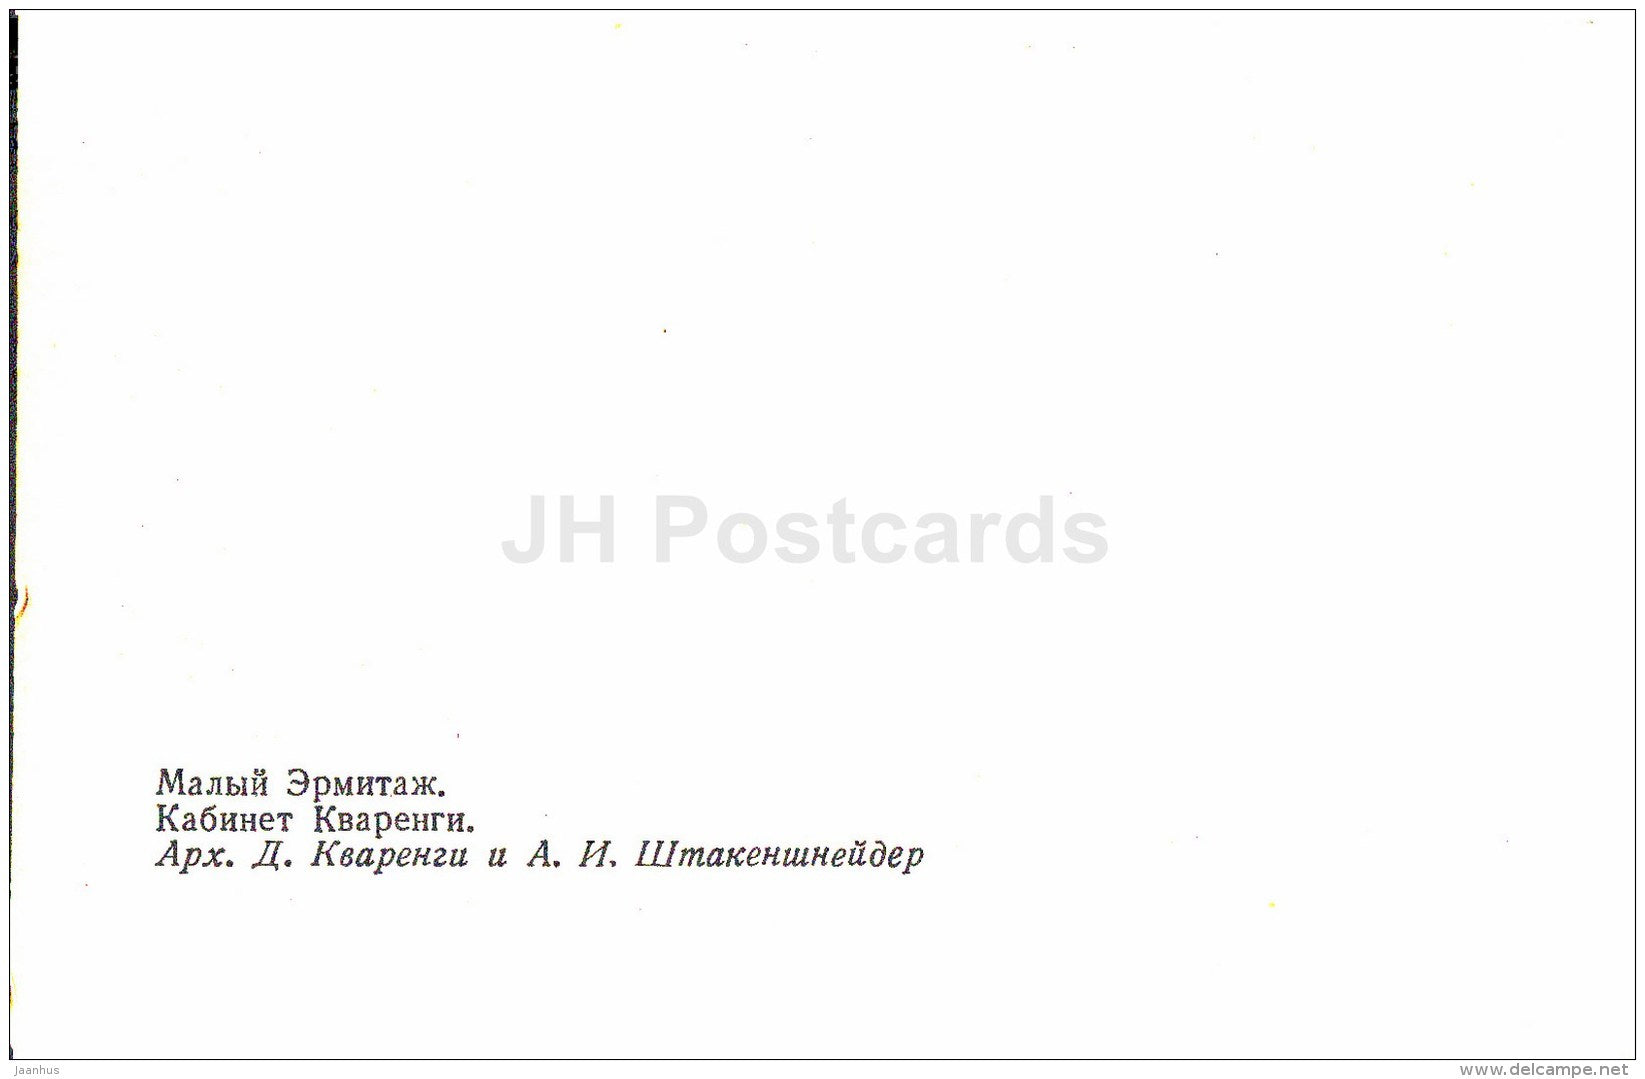 Cvarengi cabinet - The Small Hermitage - Leningrad - St. Petersburg - Russia USSR - unused - JH Postcards